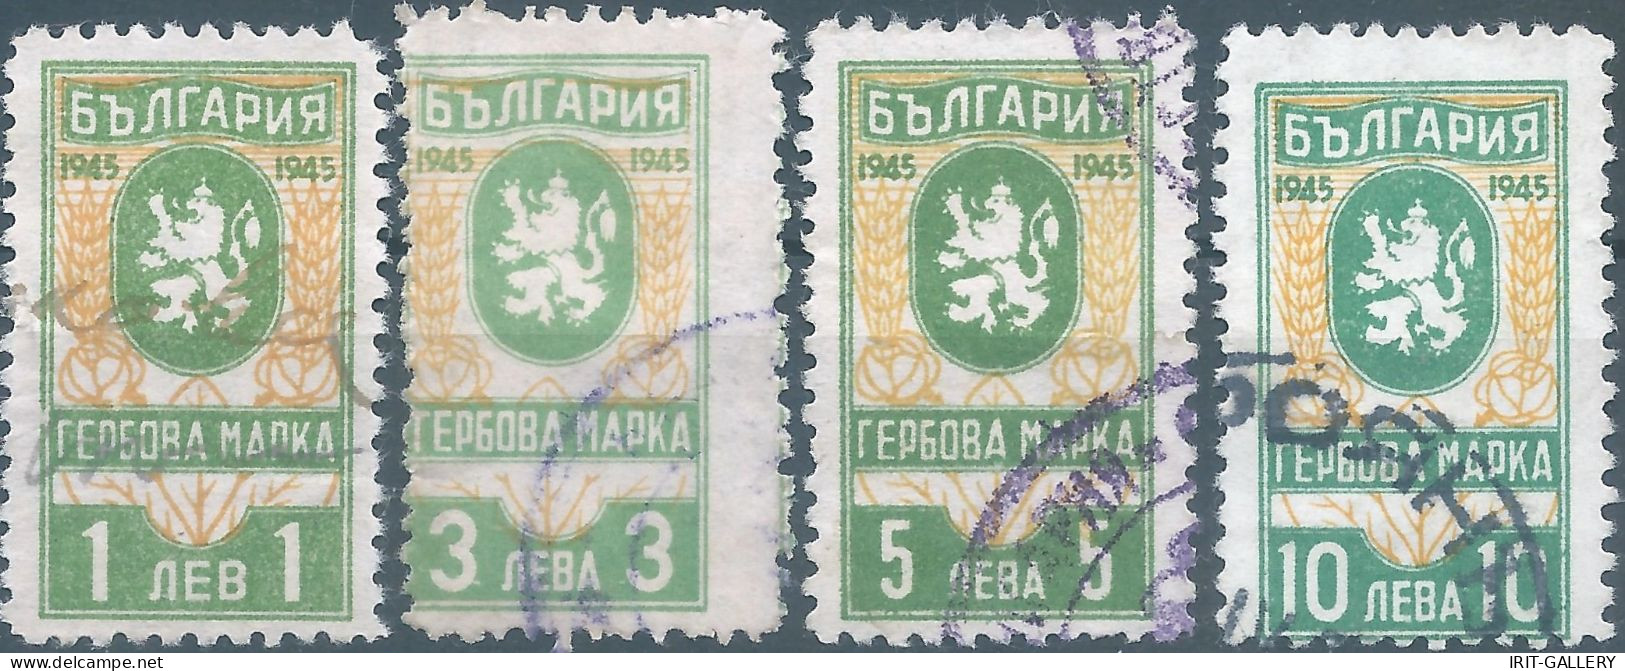 Bulgaria - Bulgarien - Bulgare,1945 Revenue Stamp Tax Fiscal,Used - Francobolli Di Servizio